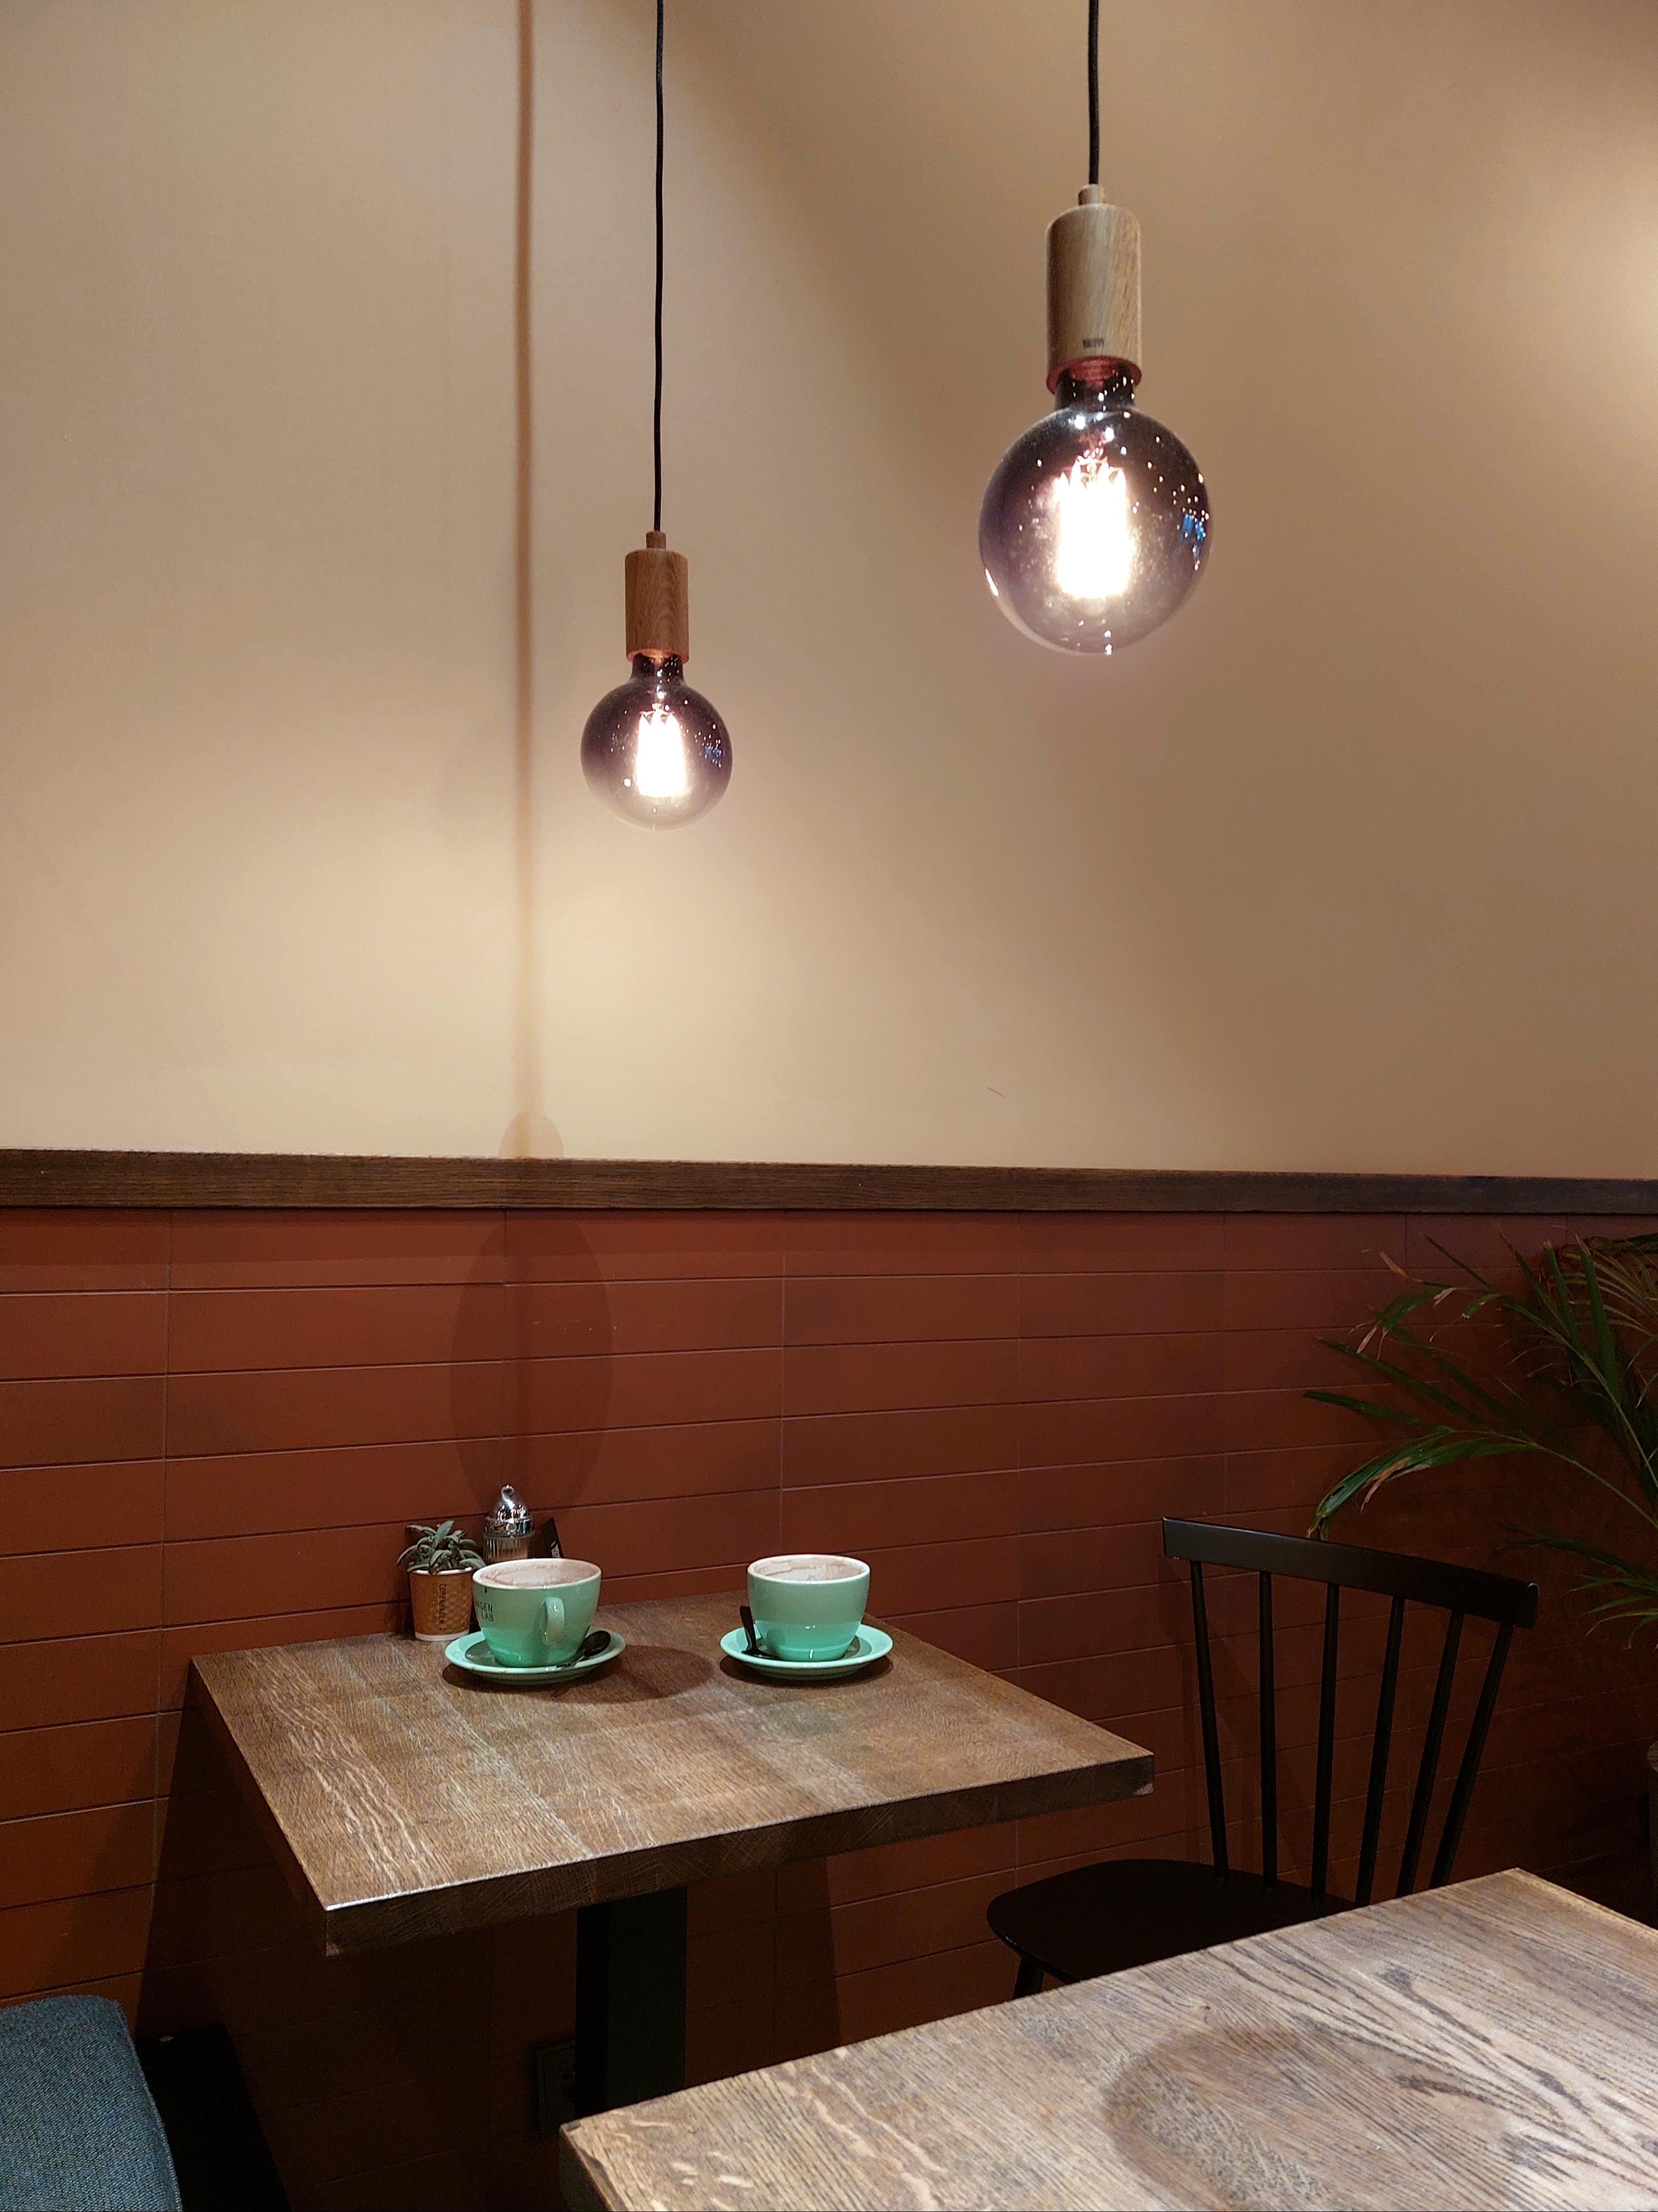 #coffeelover #foodchallenge #scandi #minimalistisch